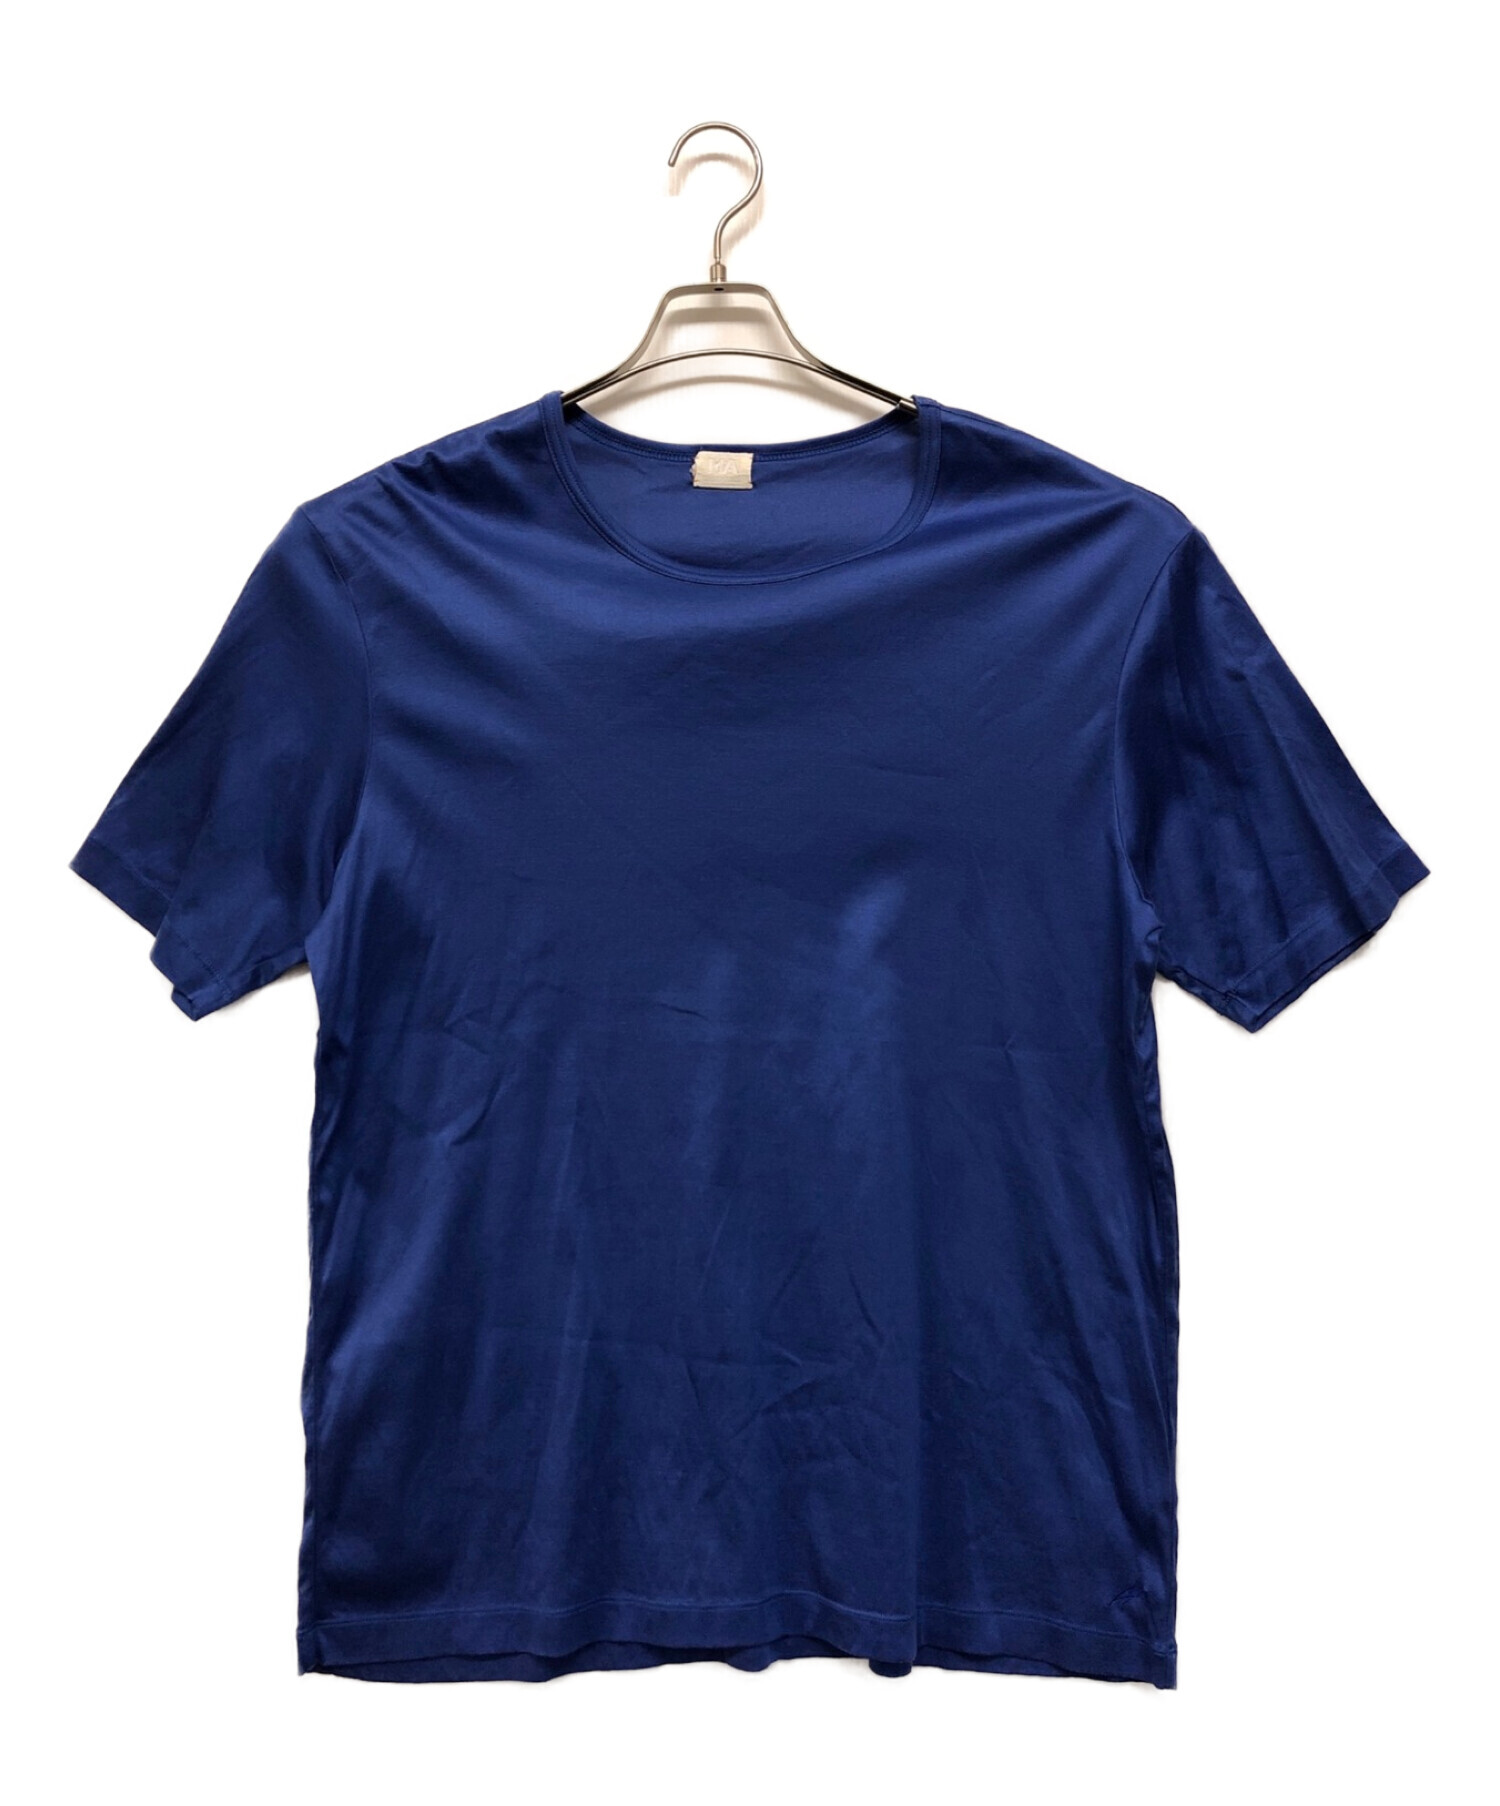 MA deshabille (エムエーデザビエ) Tシャツ ブルー サイズ:SIZE 48